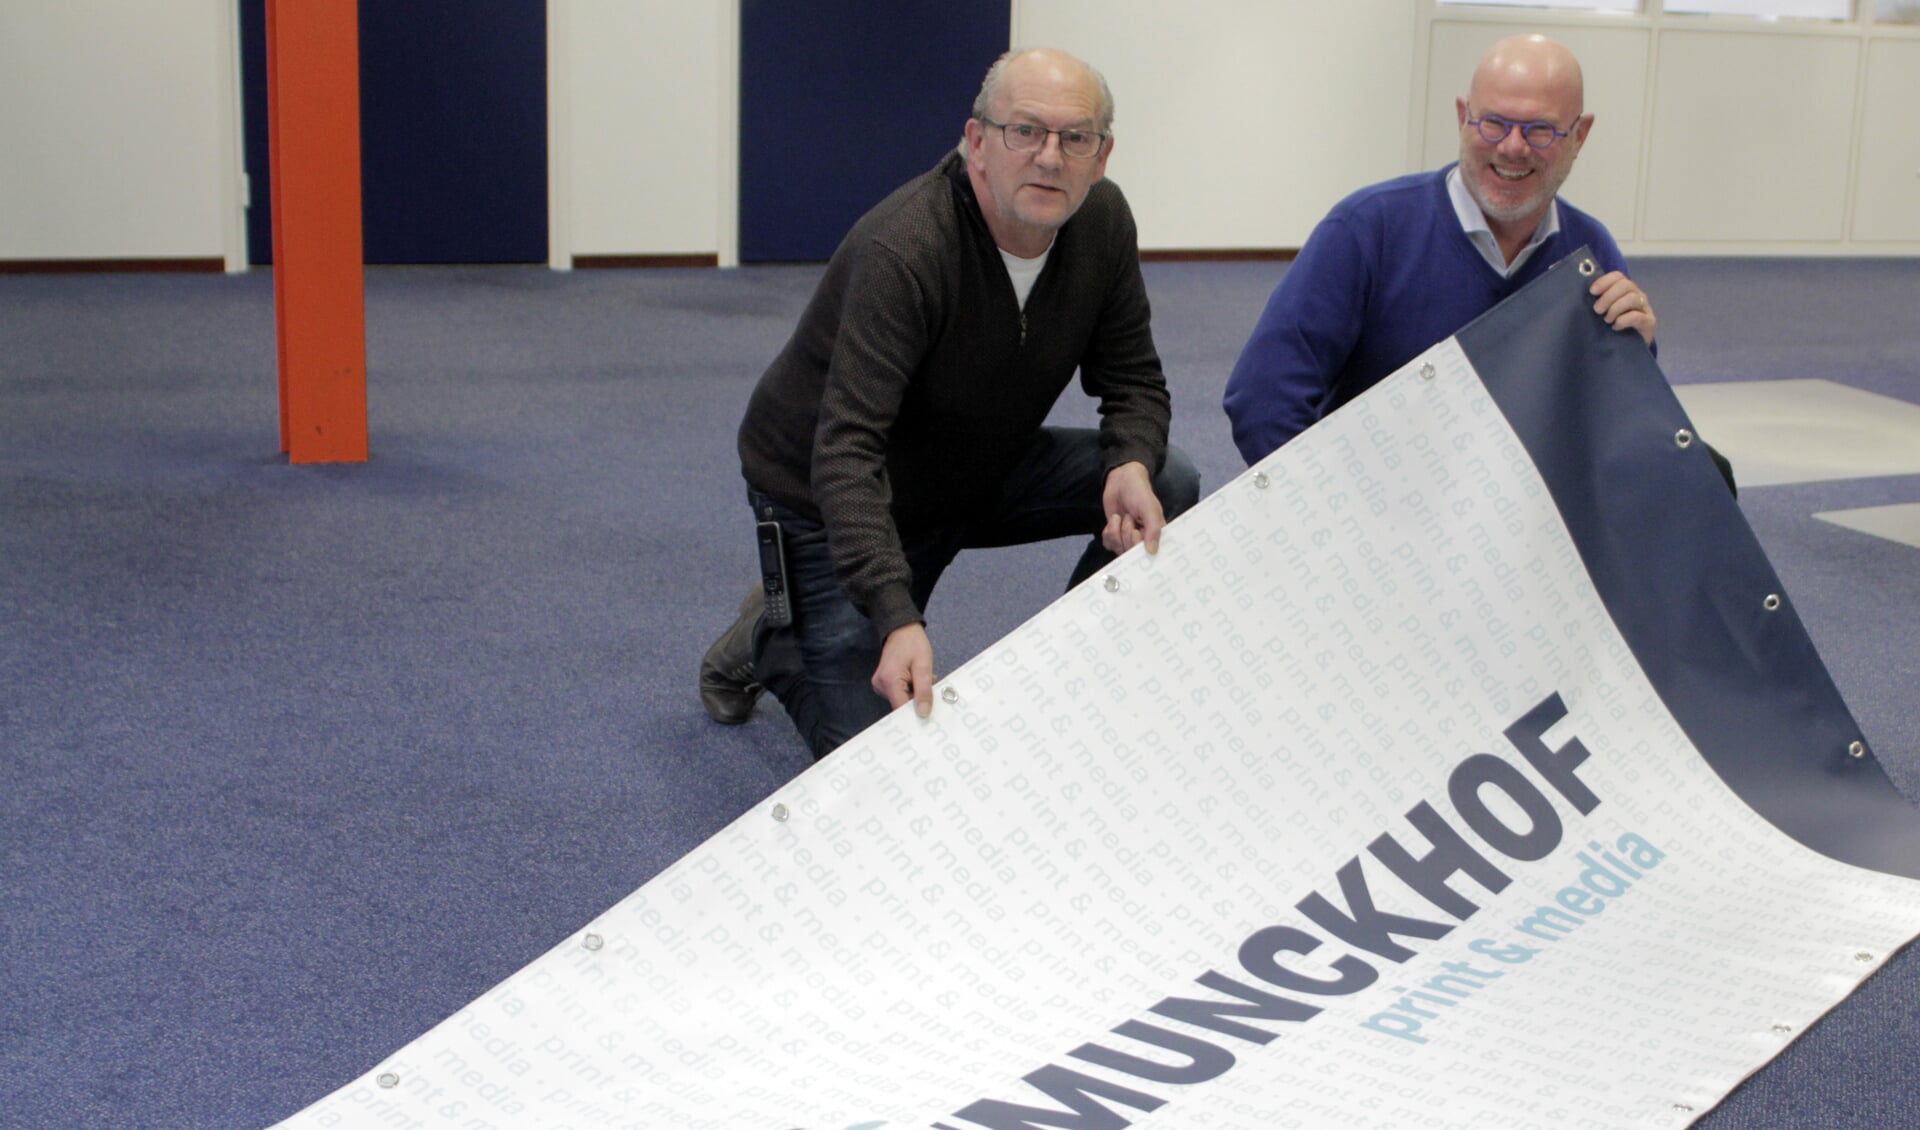 John (links) en Christ van den Munckhof presenteren de nieuwe naam: Van den Munckhof Print & Media.